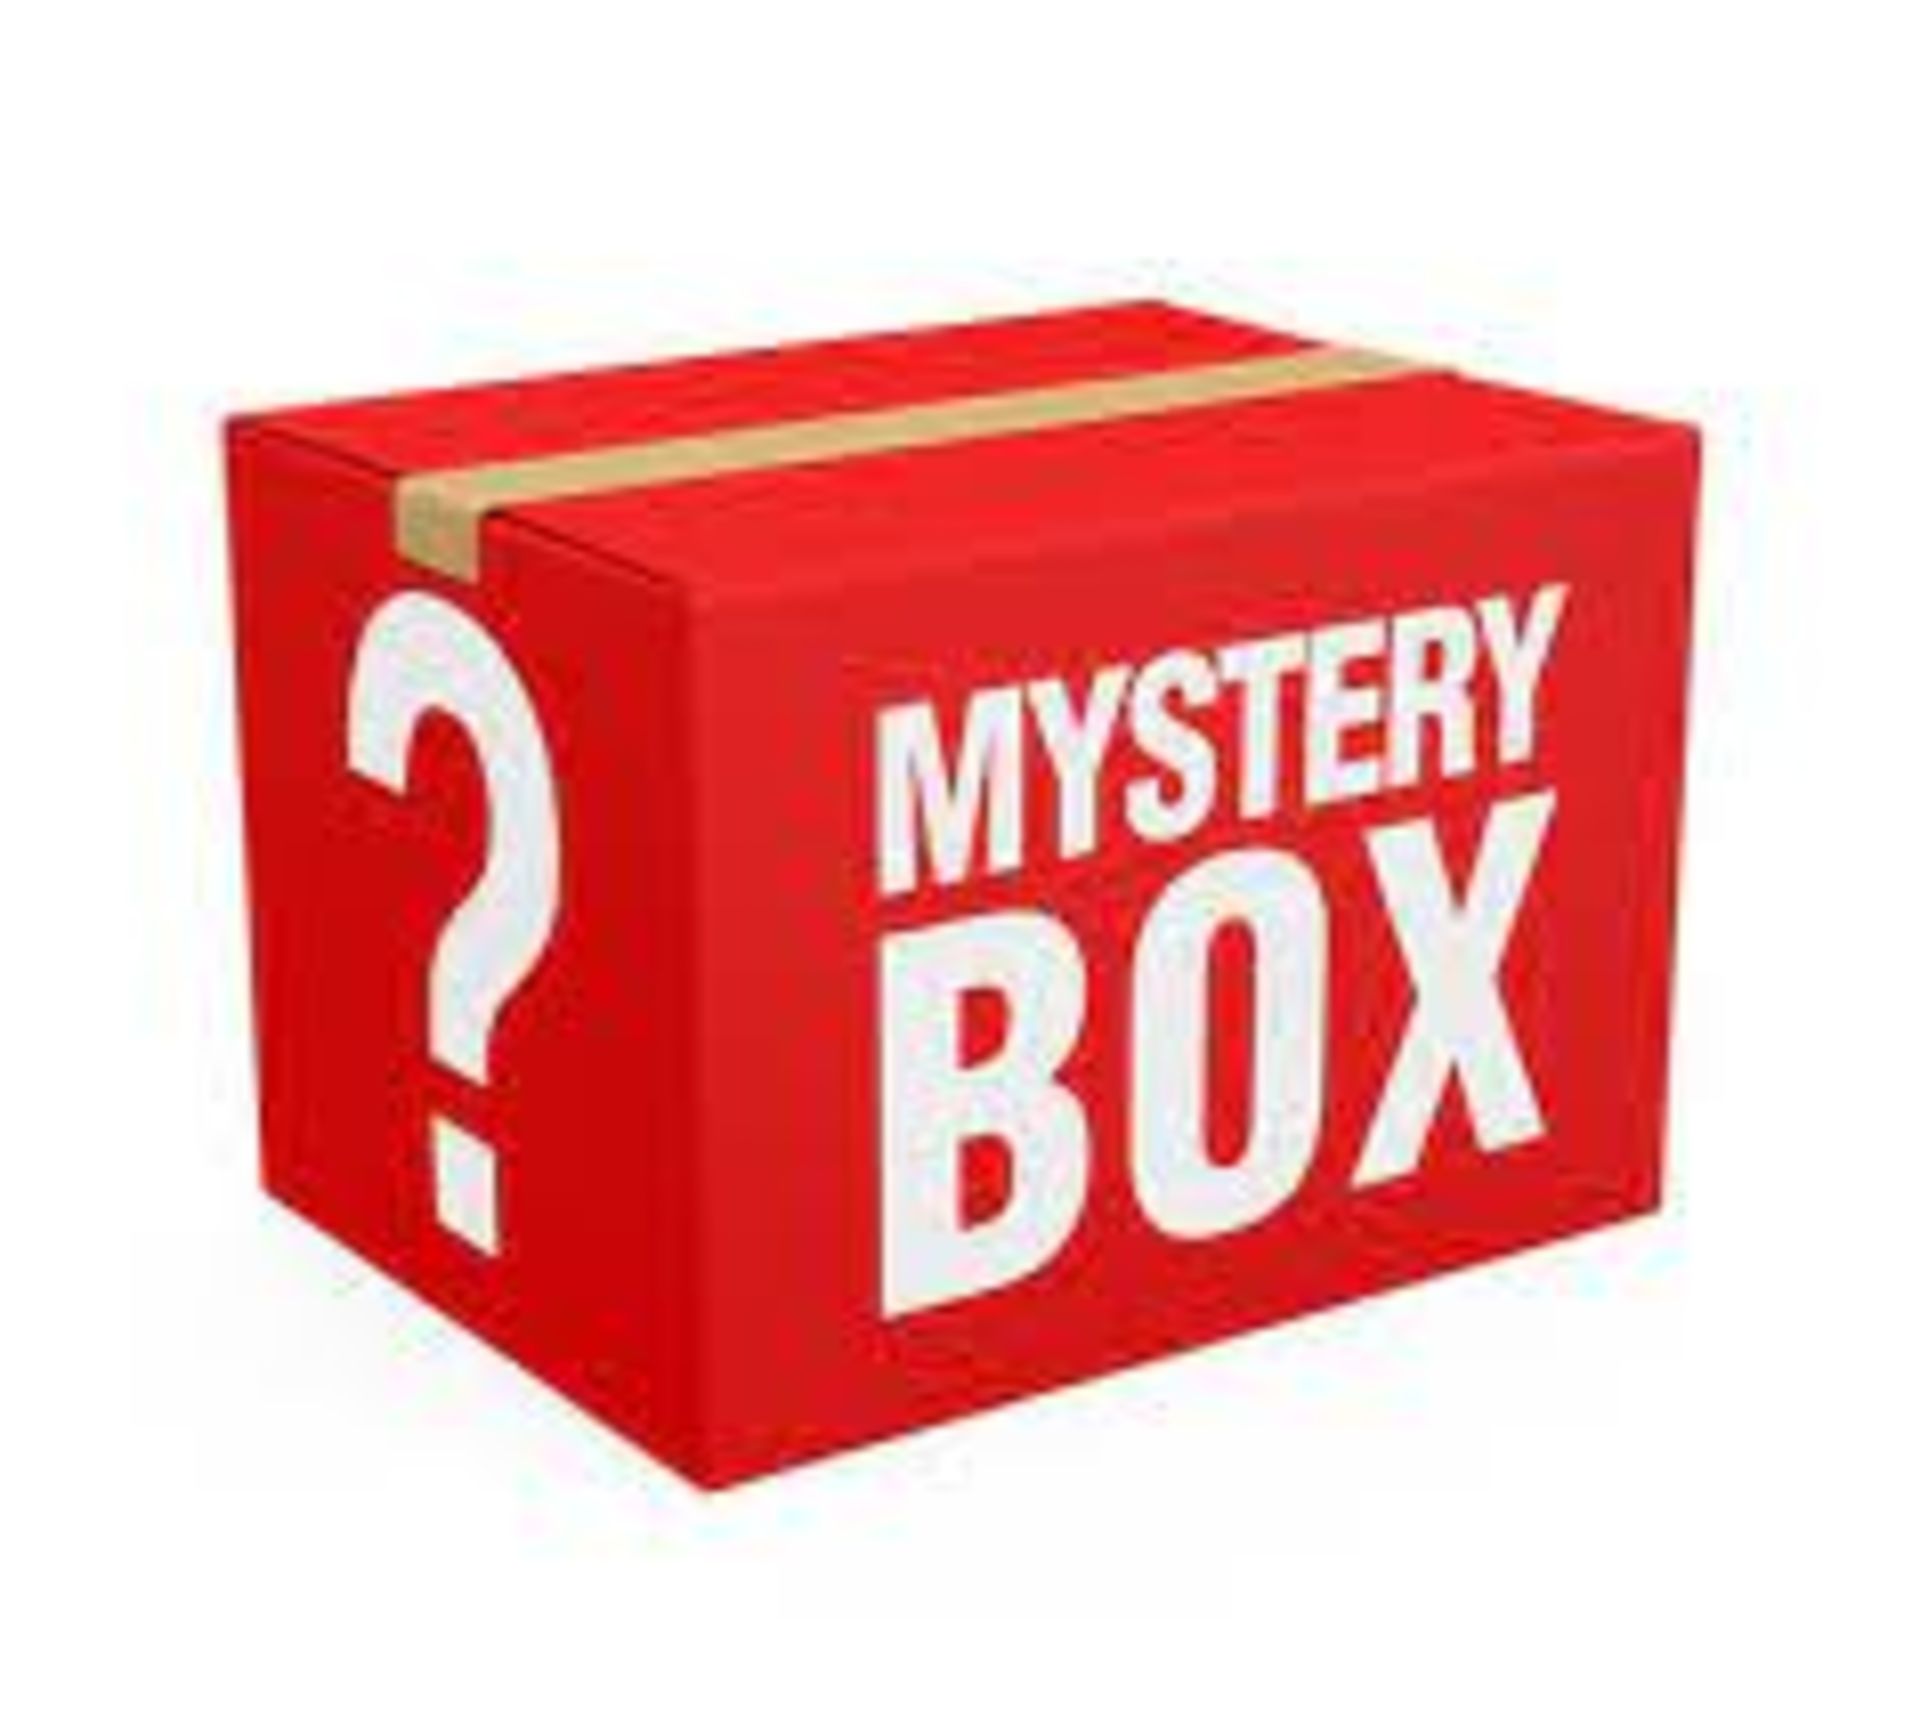 Mystery box full up